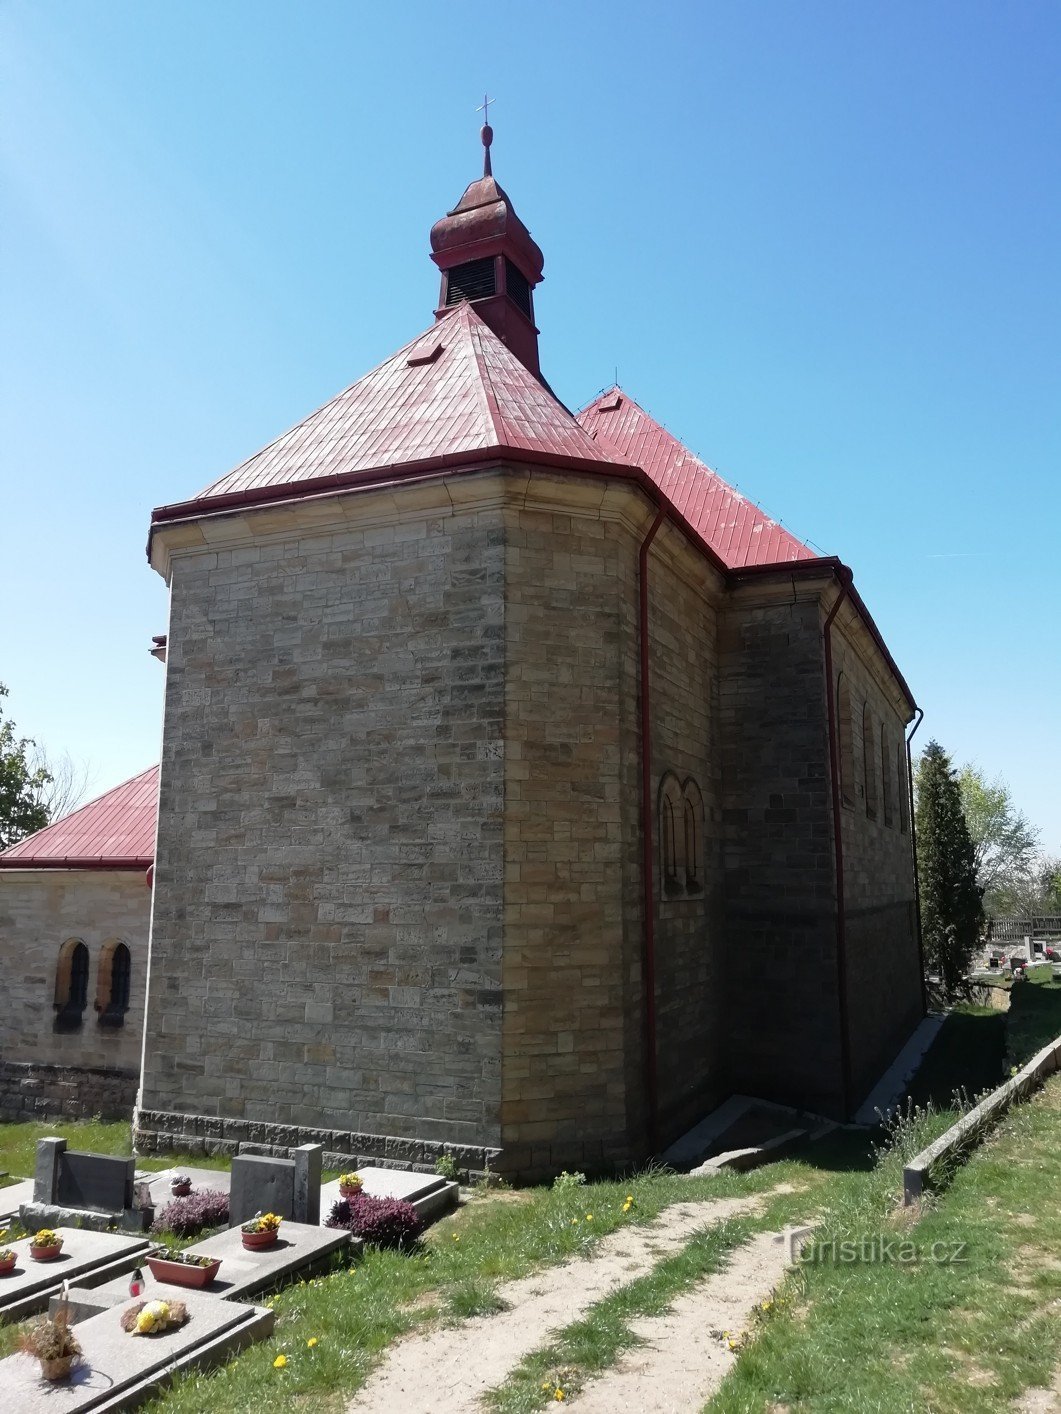 Εκκλησία της Κοιμήσεως της Θεοτόκου με το καμπαναριό στο χωριό Vyskeř